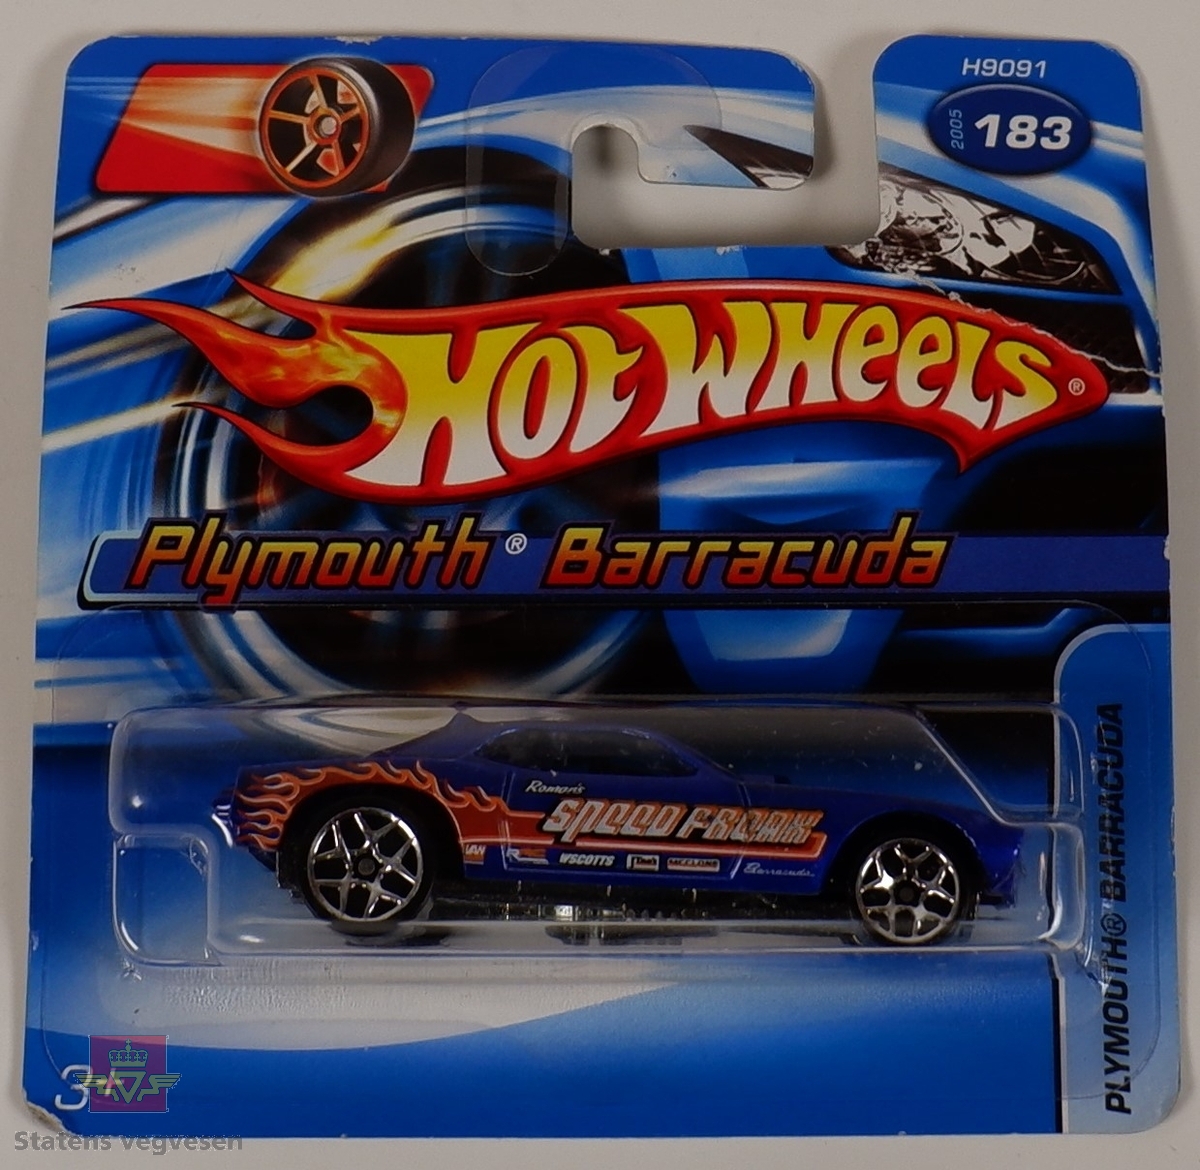 Modellbil av en Plymouth Barracuda, modellbilen er farget blå med oransje flammedetaljer.